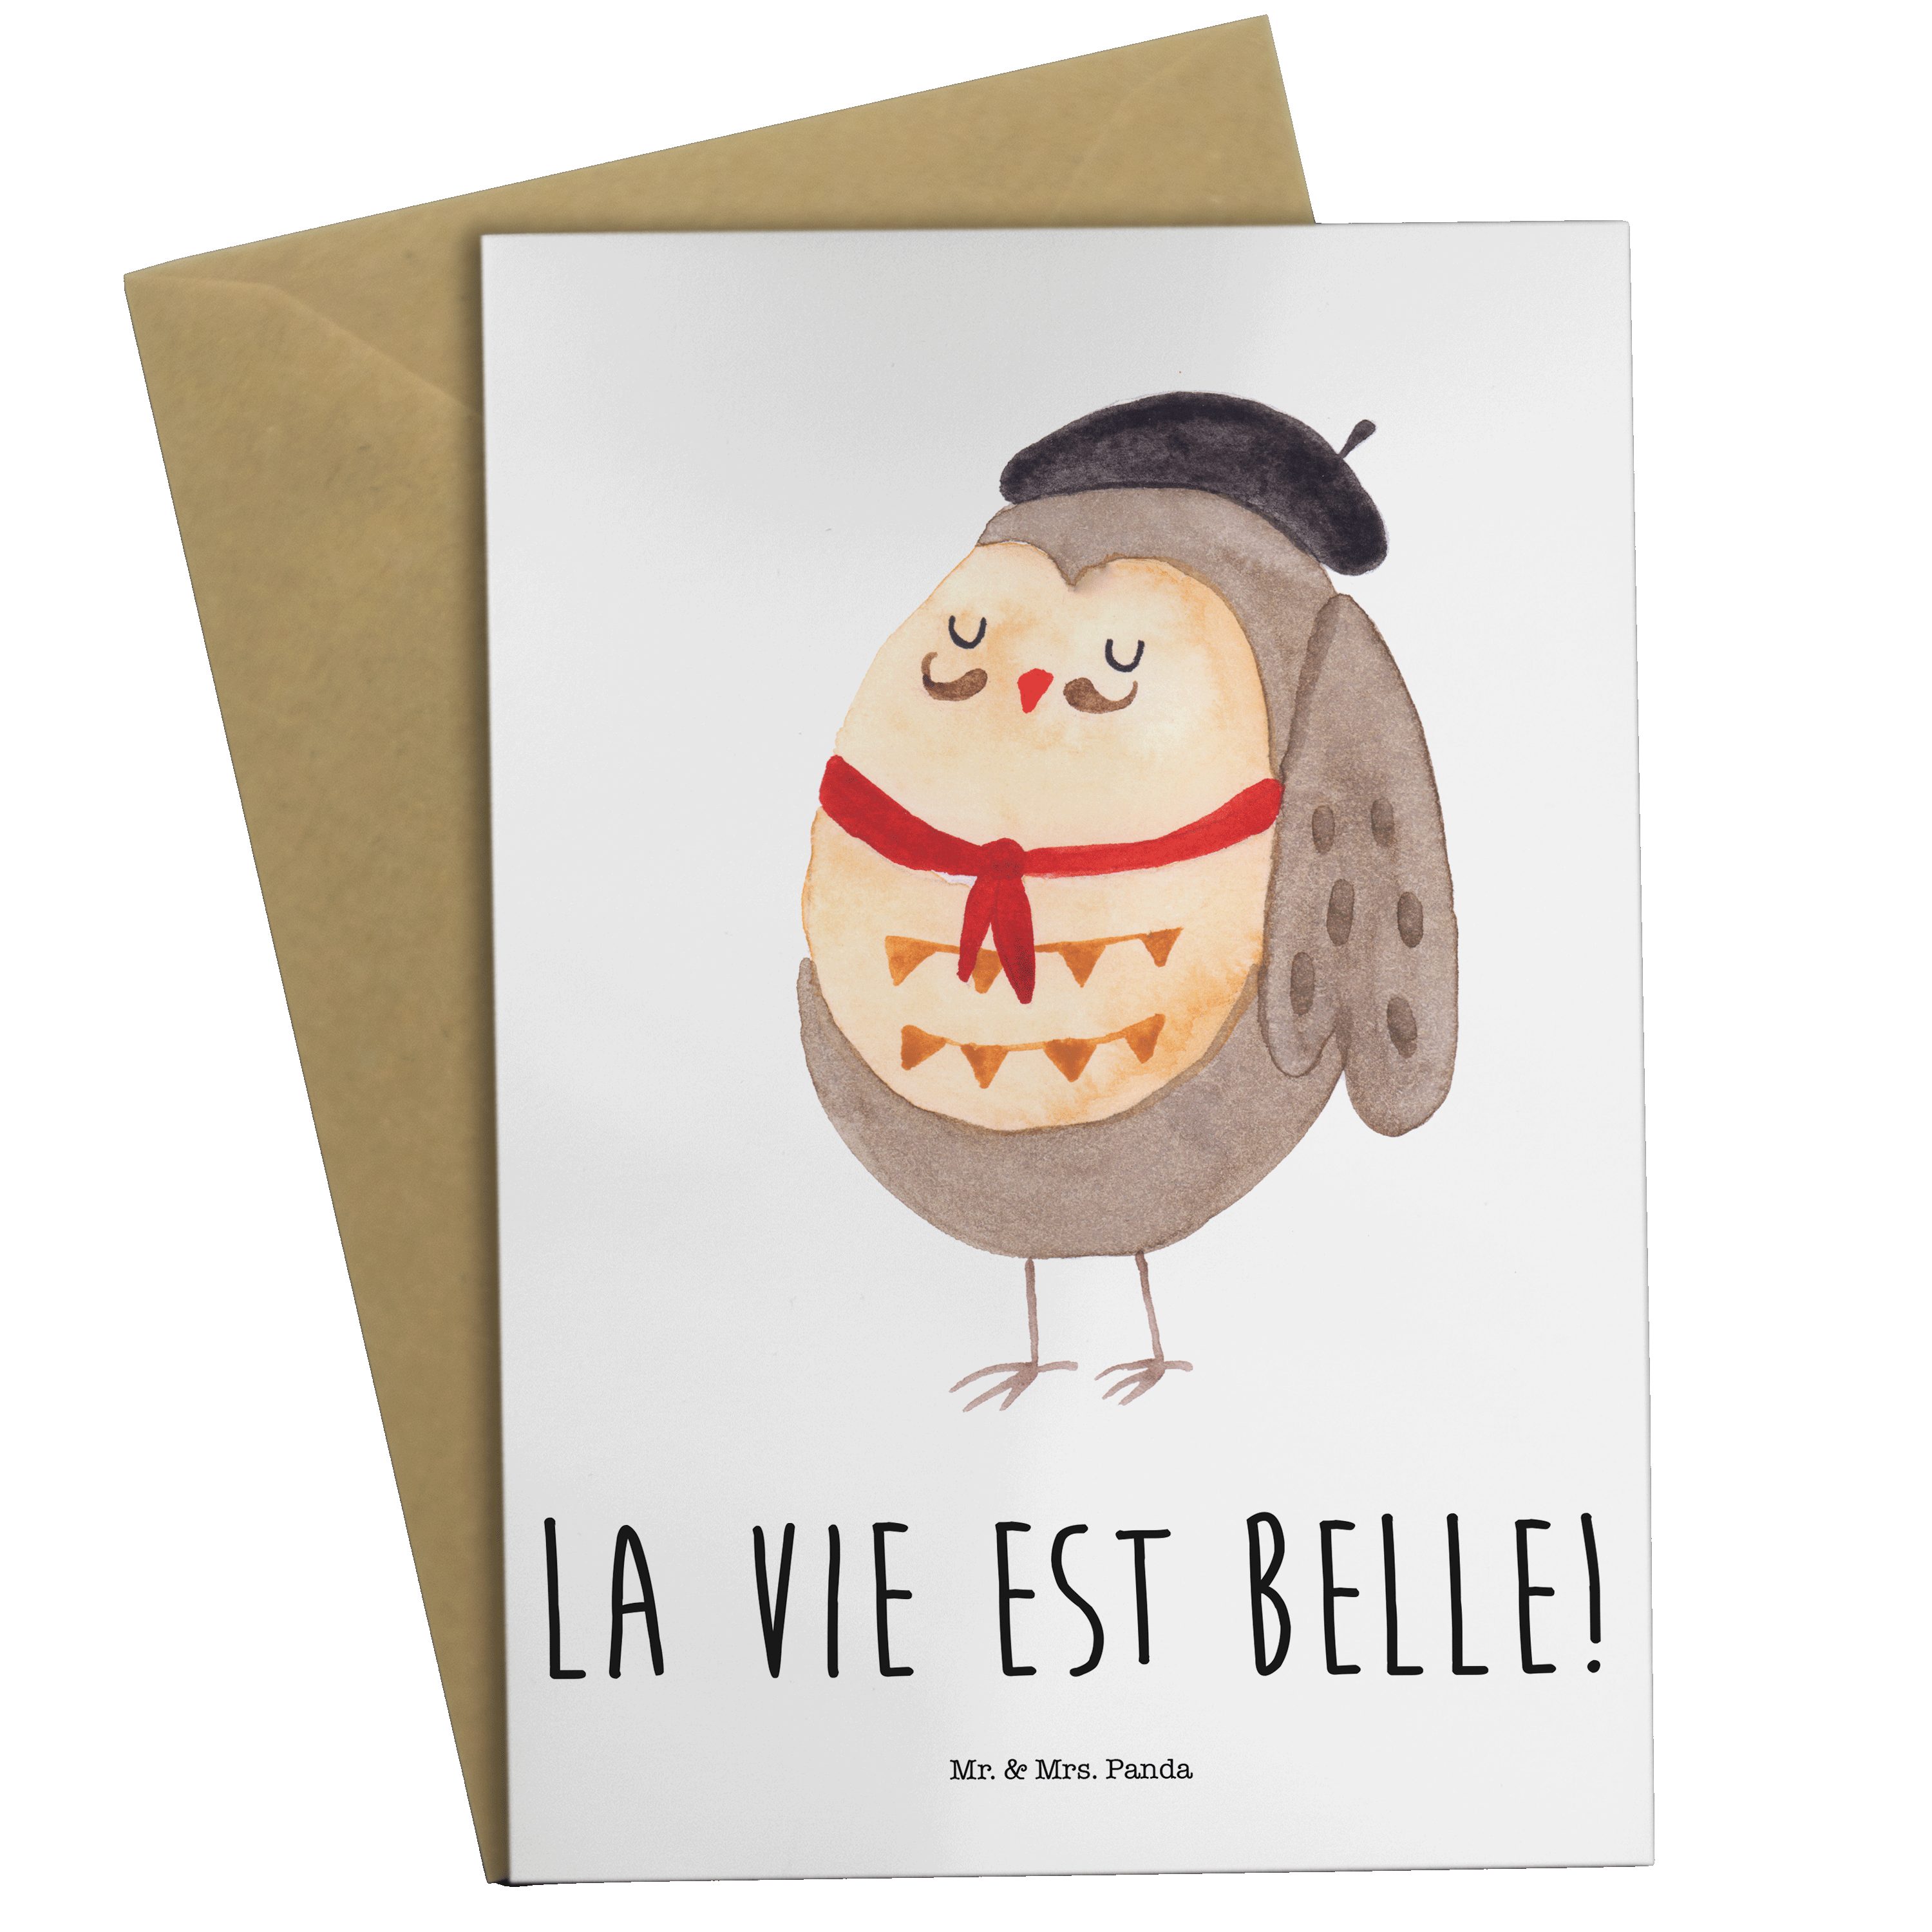 Mr. & Mrs. Panda Grußkarte - Klappkar belle, est - Weiß Geschenk, vie La hibou, Französisch Eule